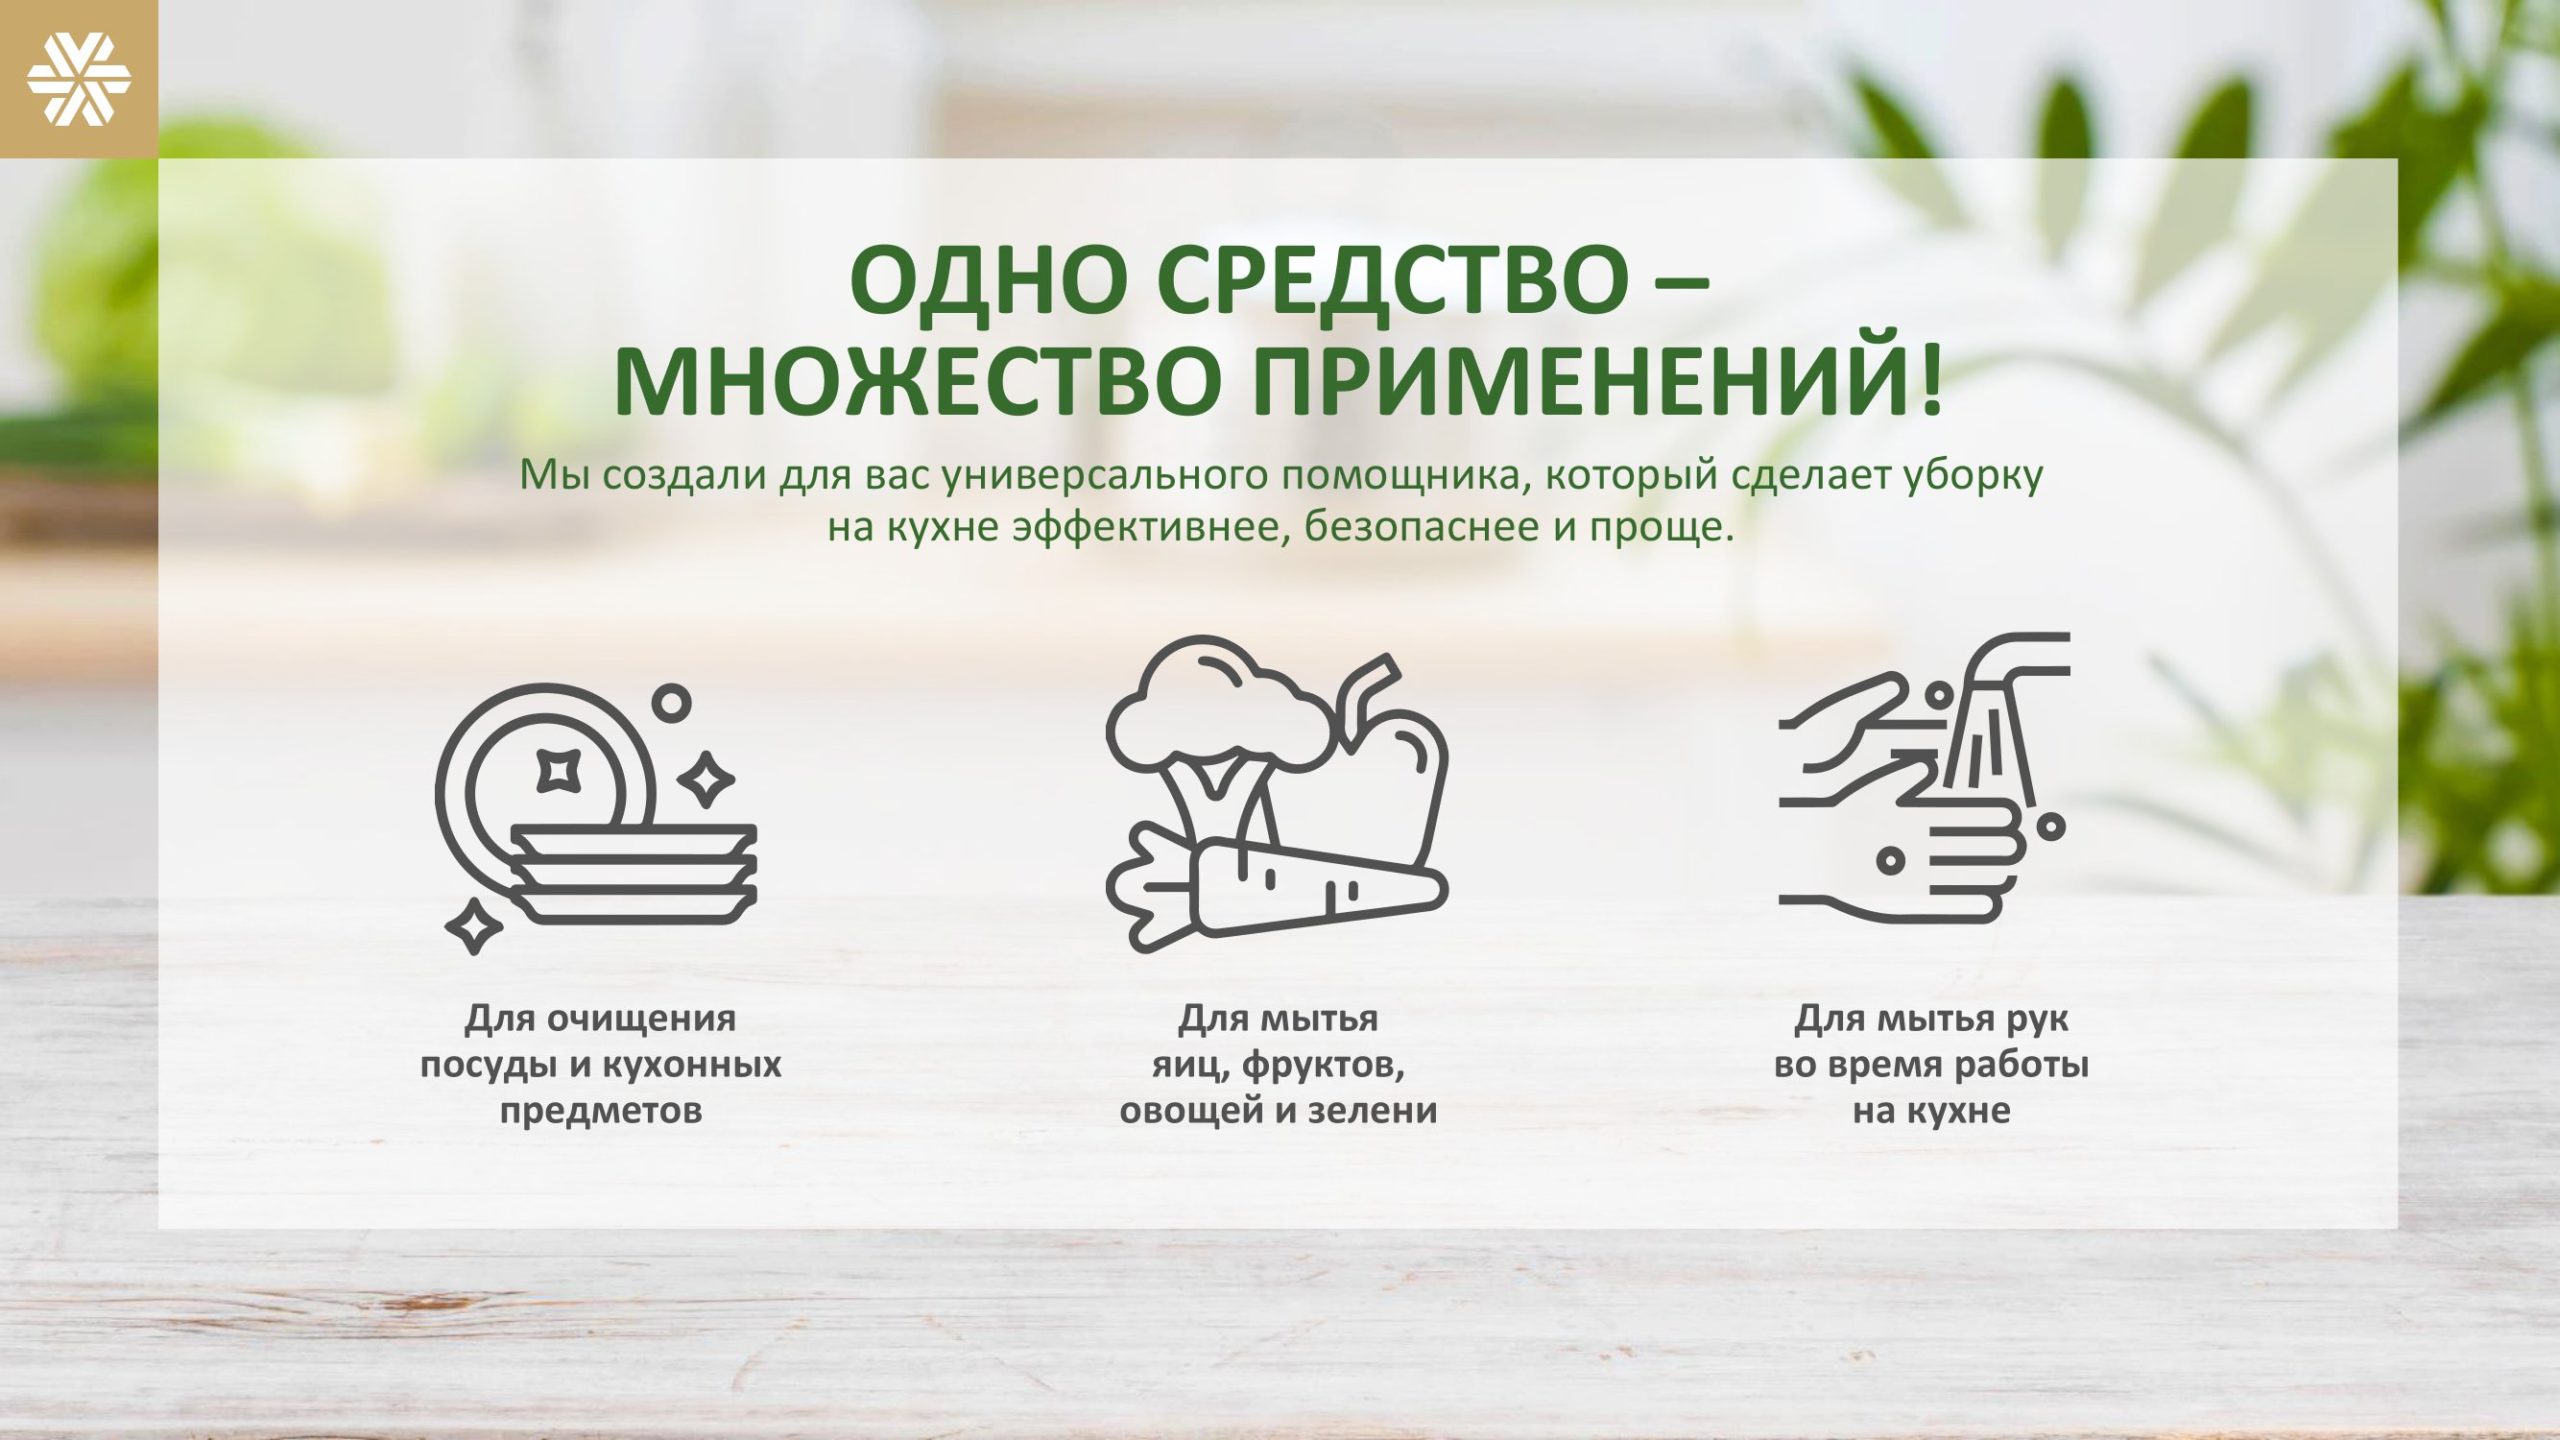 мыло для кухни сибирское здоровье